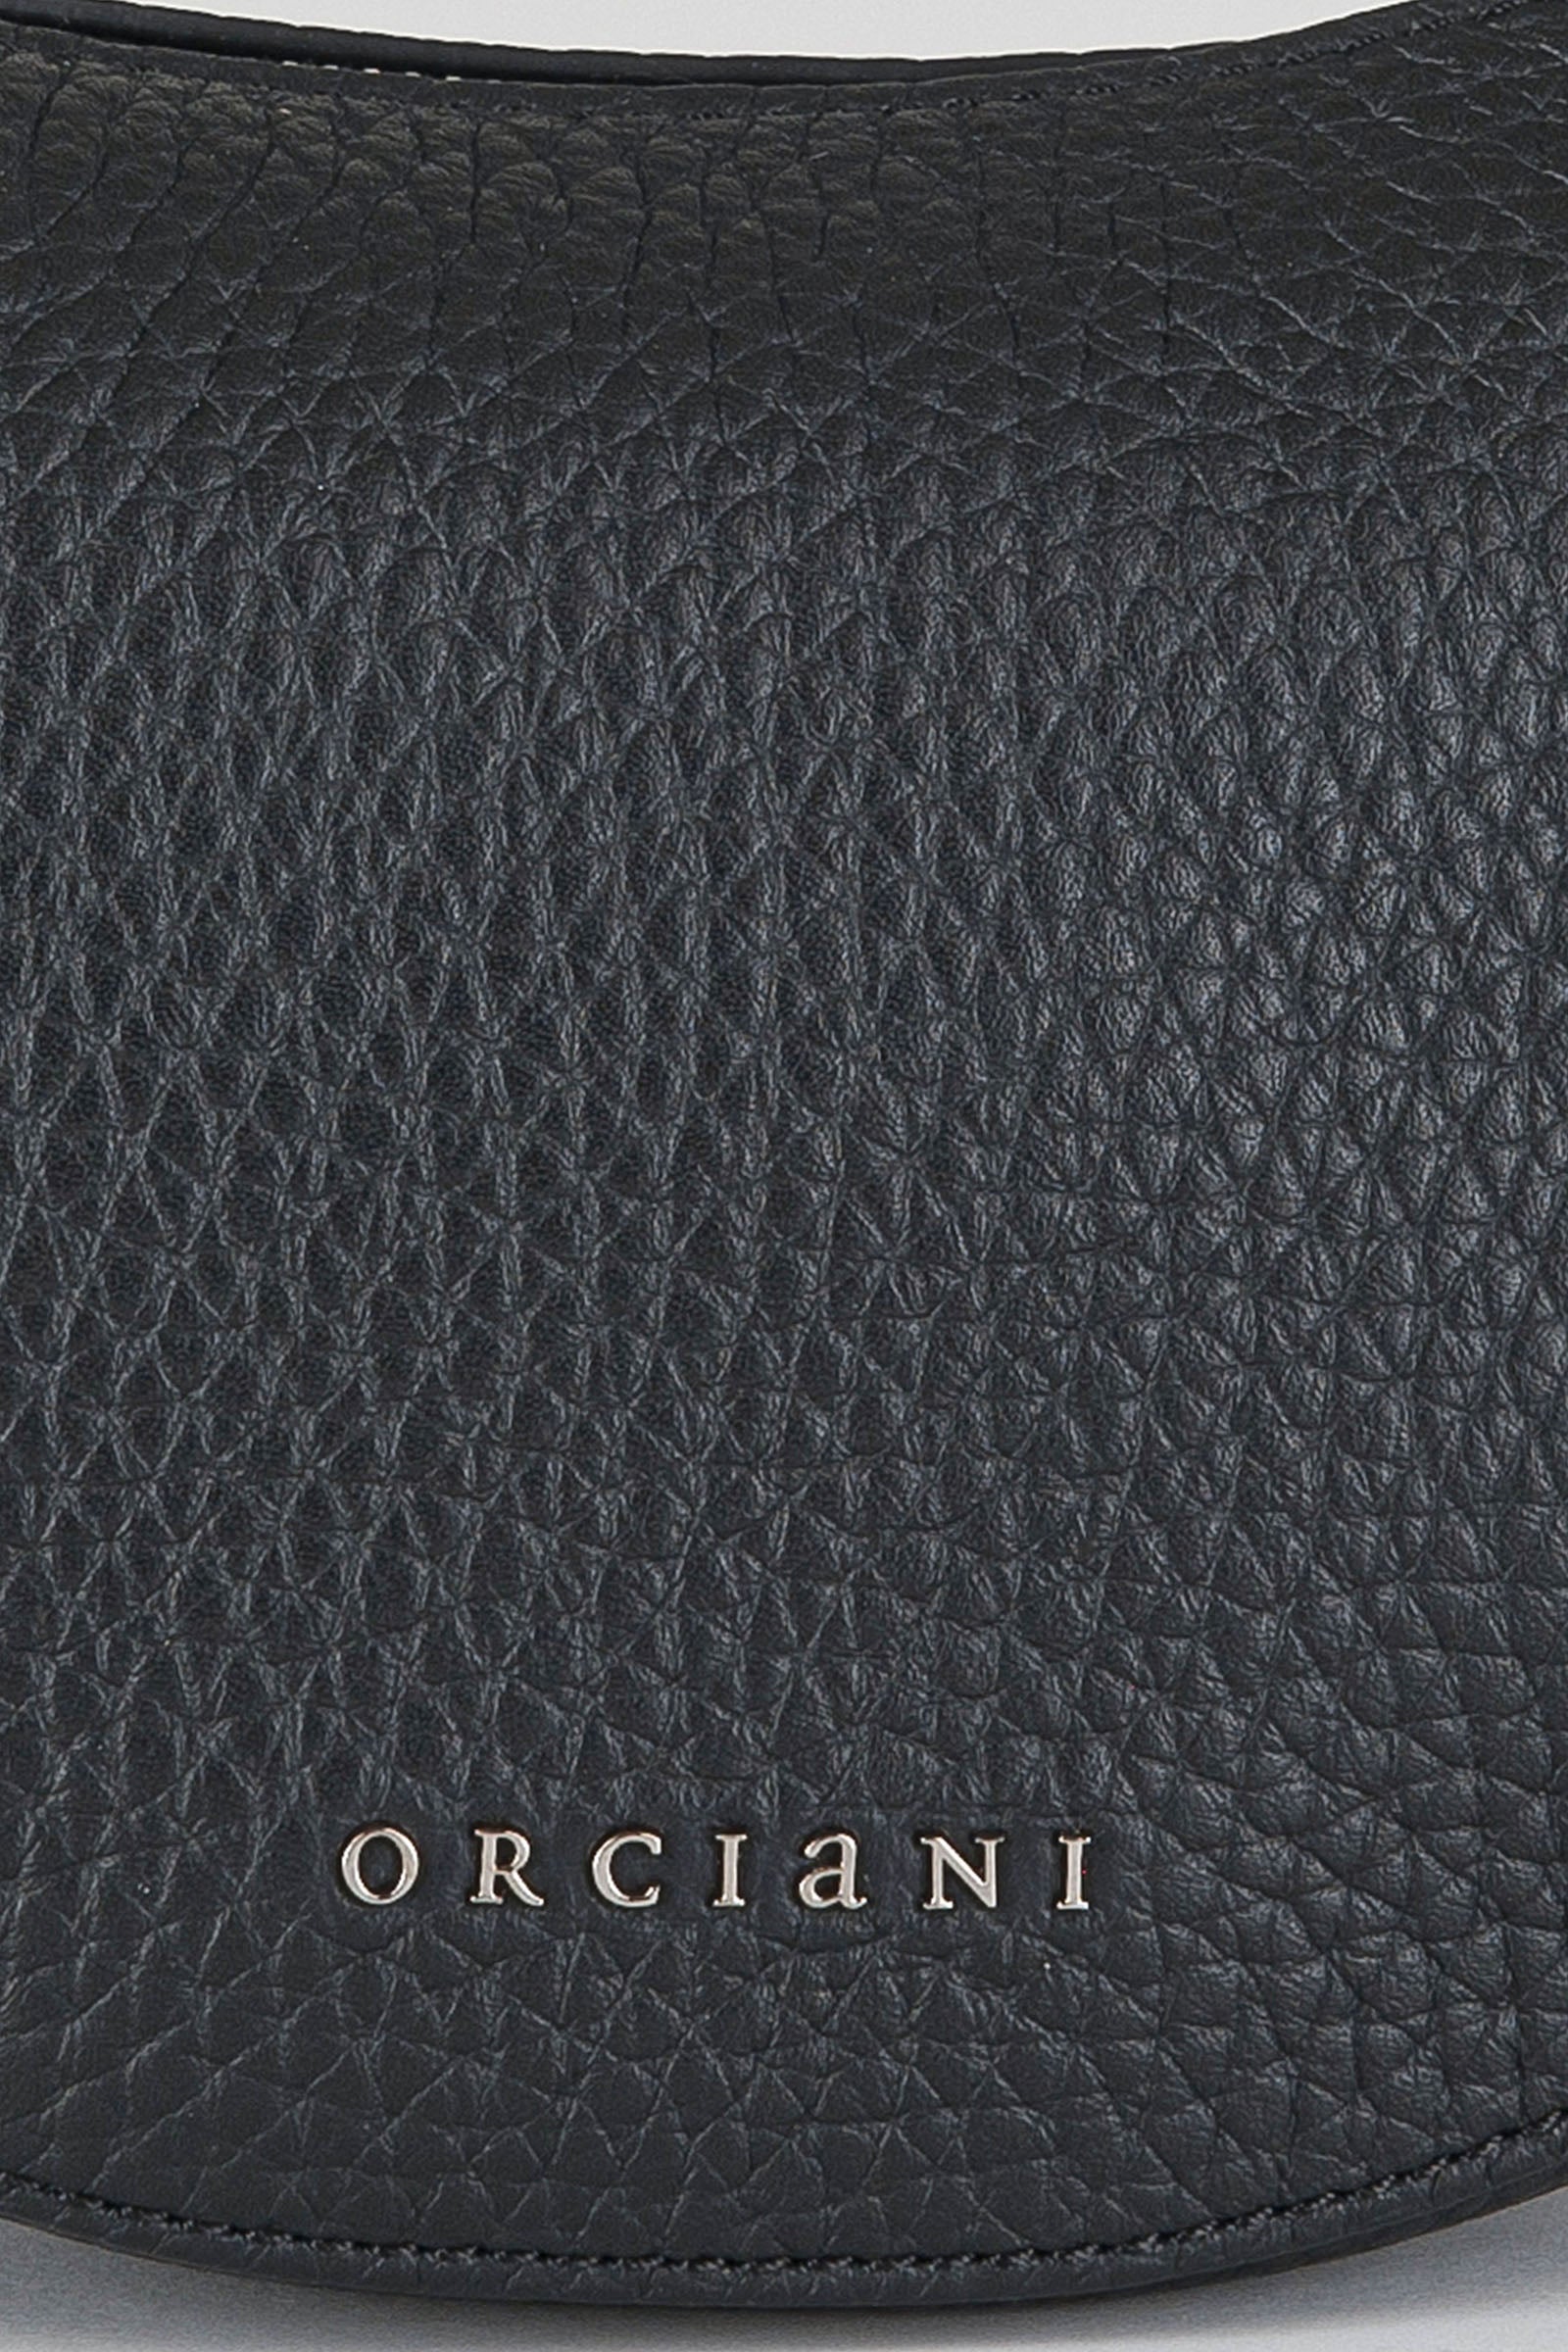 Orciani Mini Bag Hobo Soft in Pelle Nero Donna SD0179NERO - 4